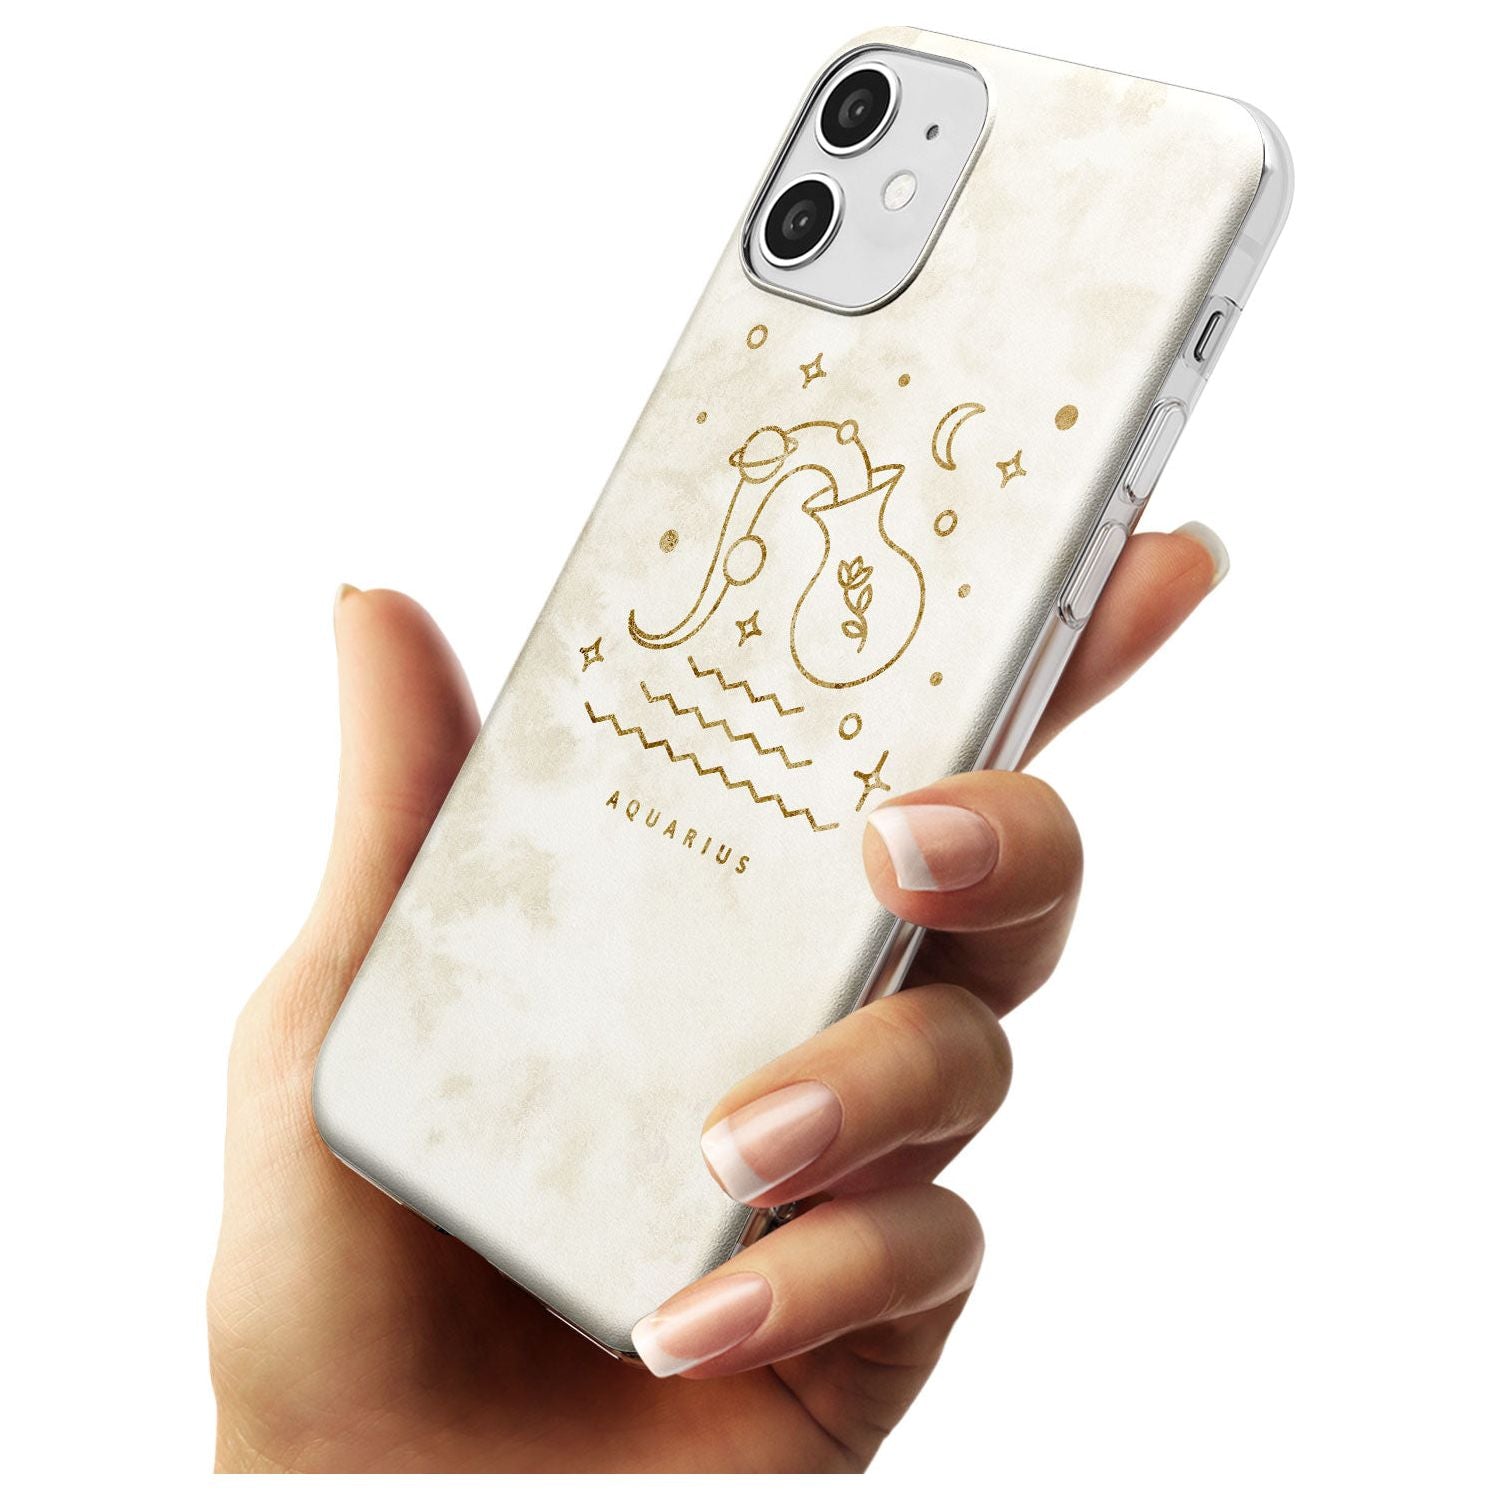 Aquarius Emblem - Solid Gold Marbled Design Slim TPU Phone Case for iPhone 11